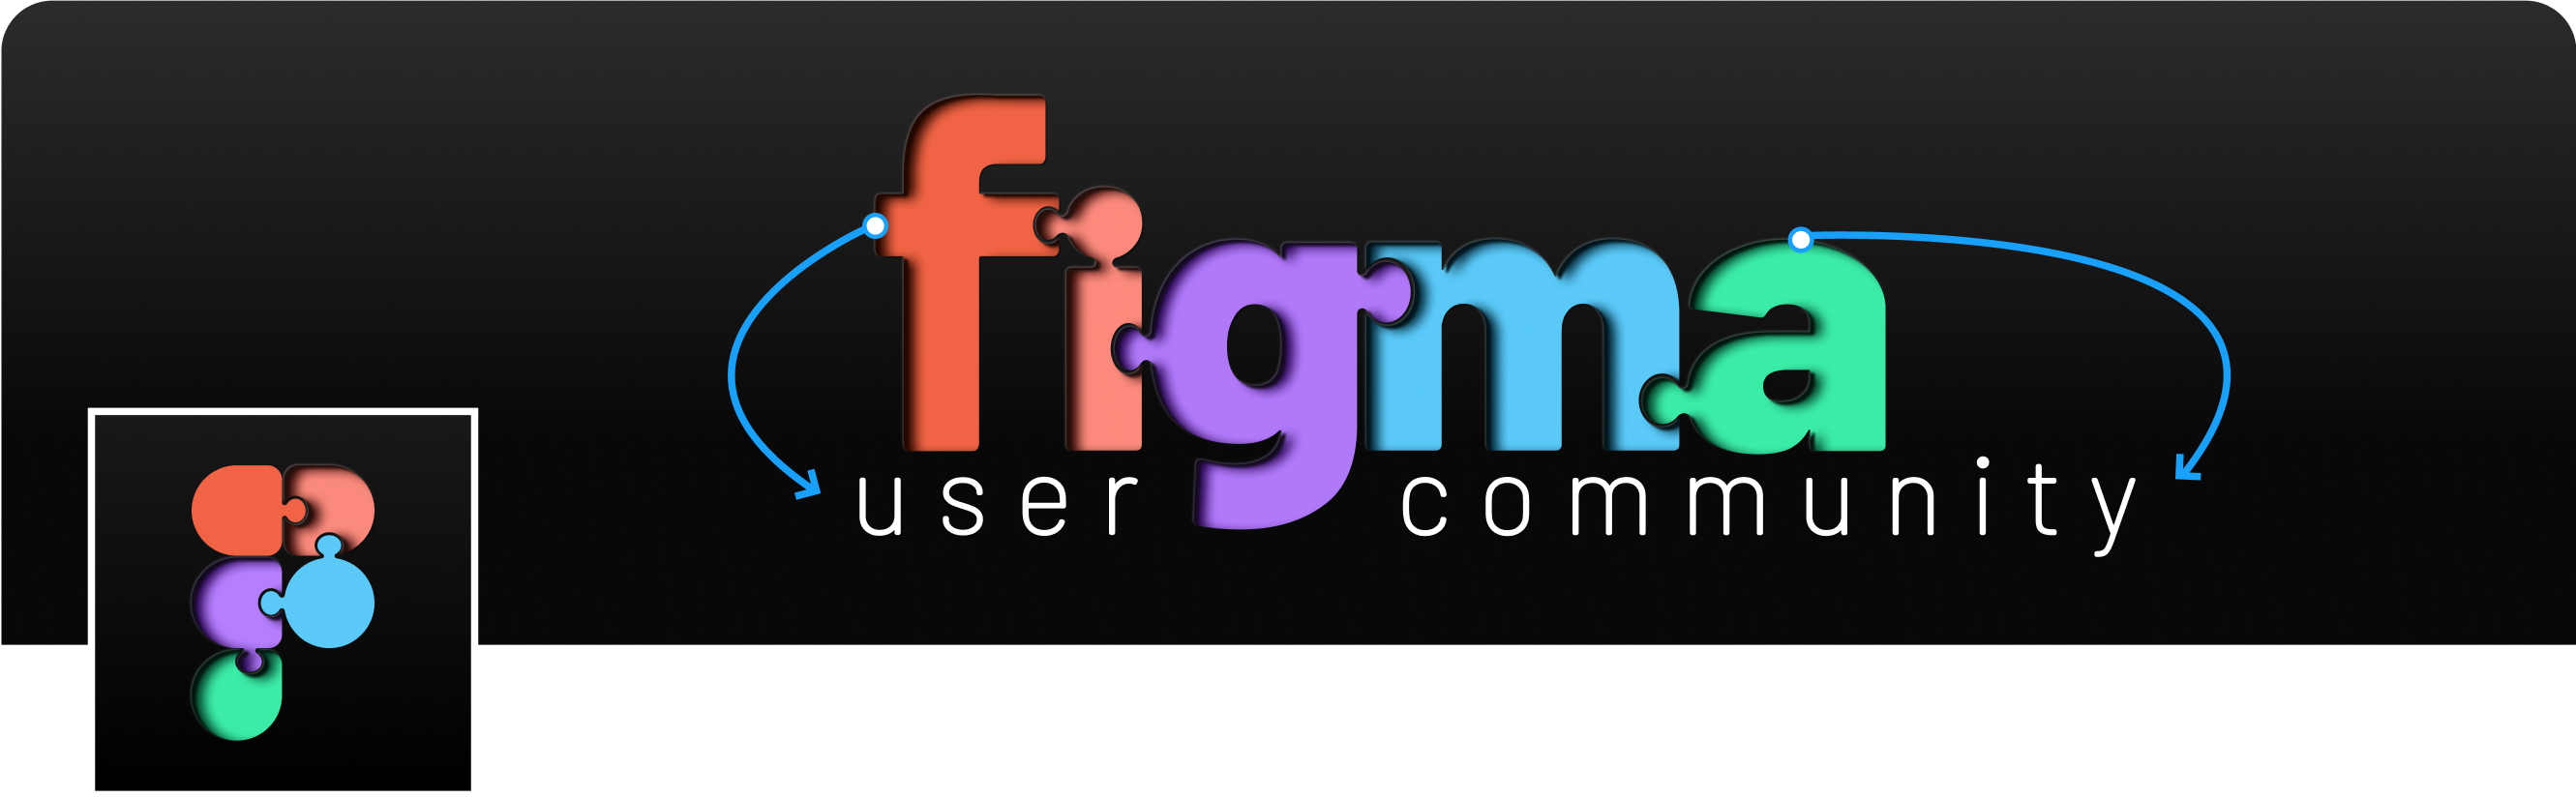 Figma User Community Logo & Banner